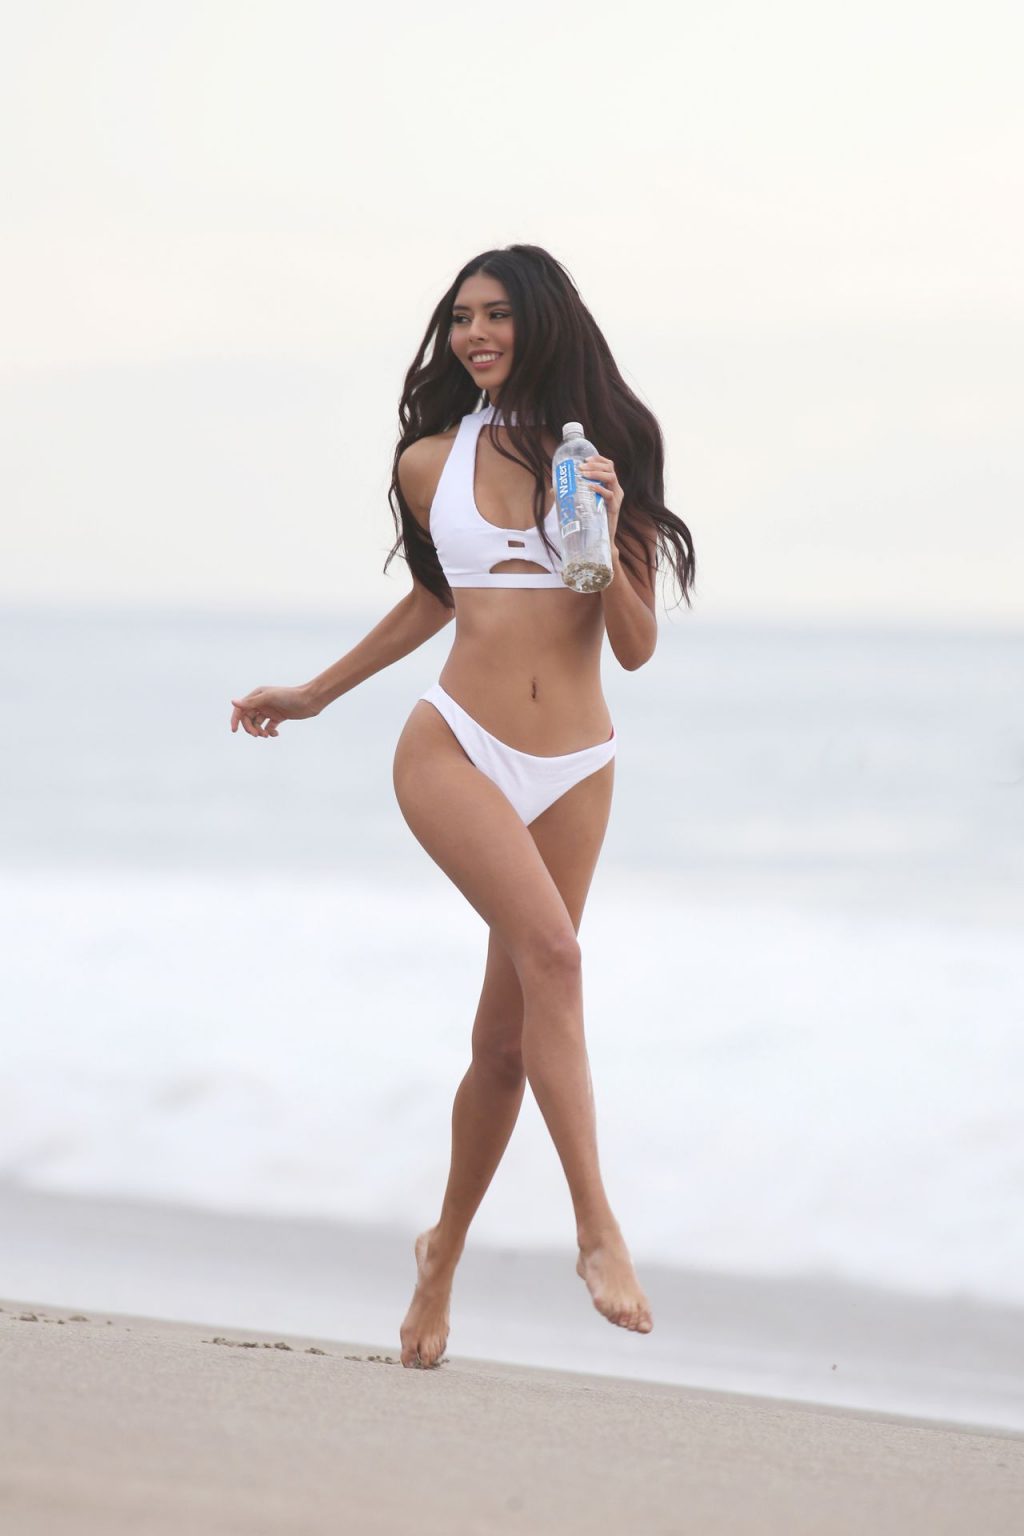 Nicole Esparza Shows Her Sexy Bikini Body in a New Photoshoot (46 Photos)